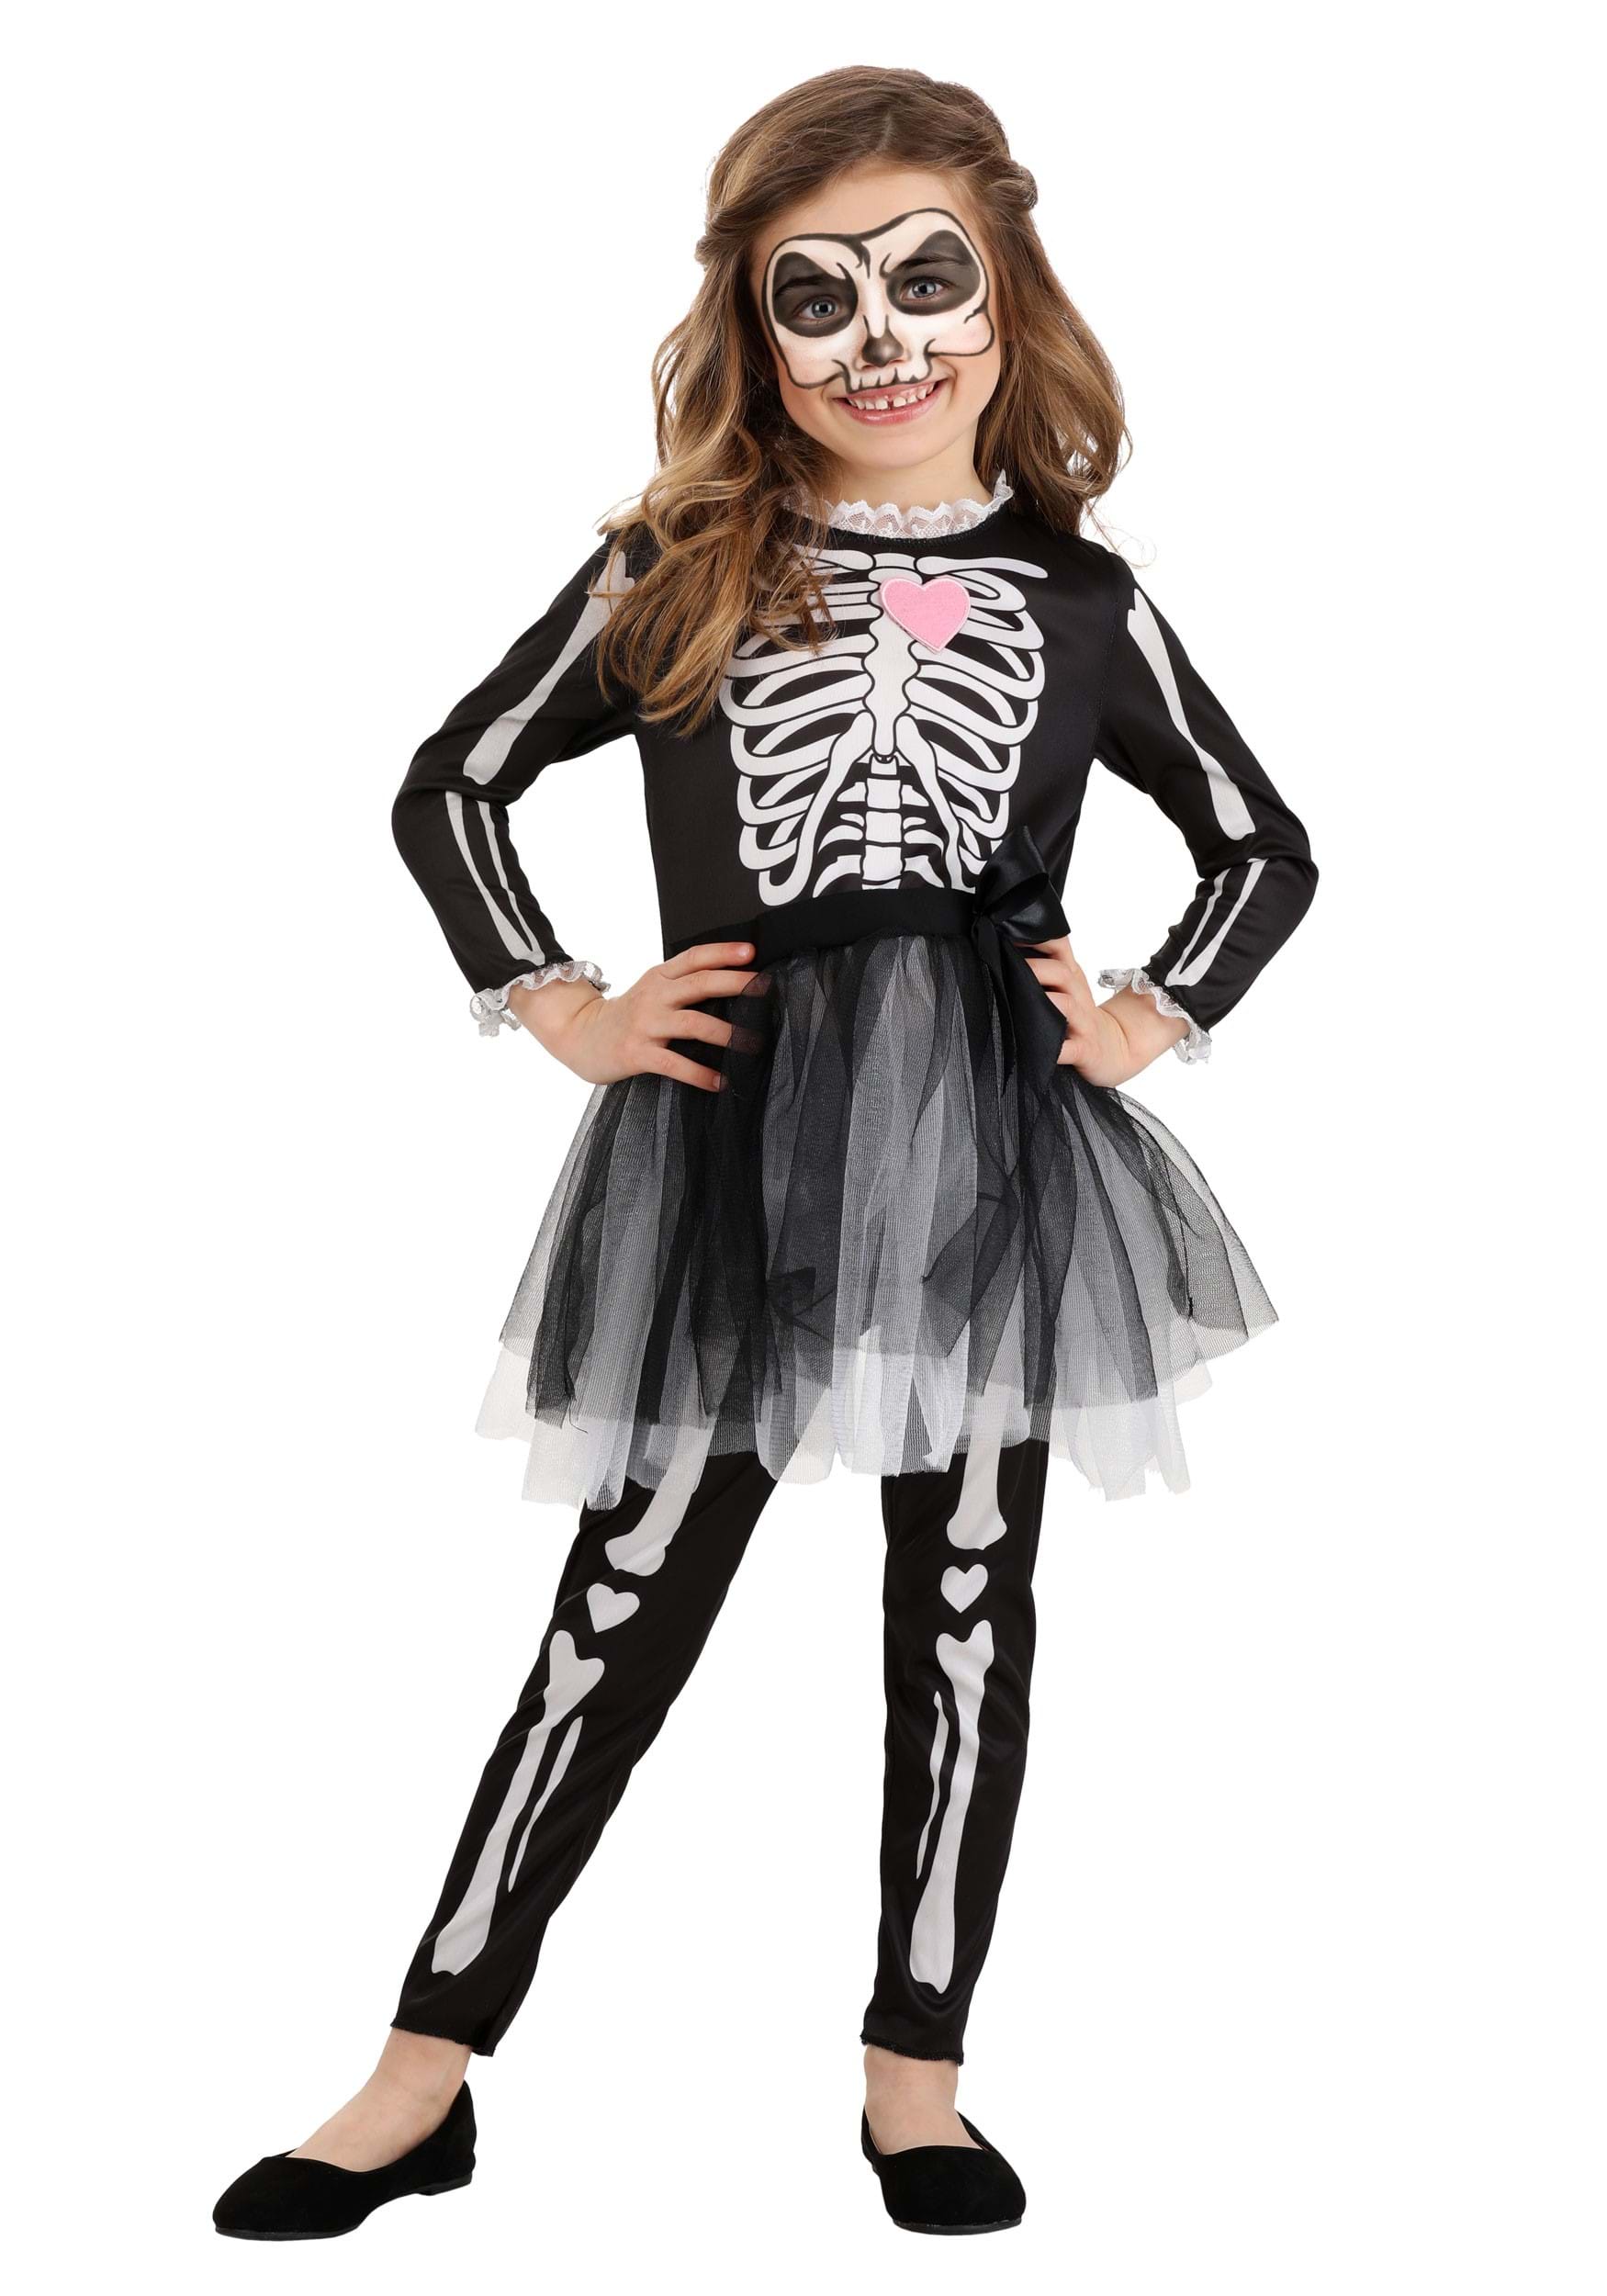 Bare Bone Babe Skeleton Costume for Women